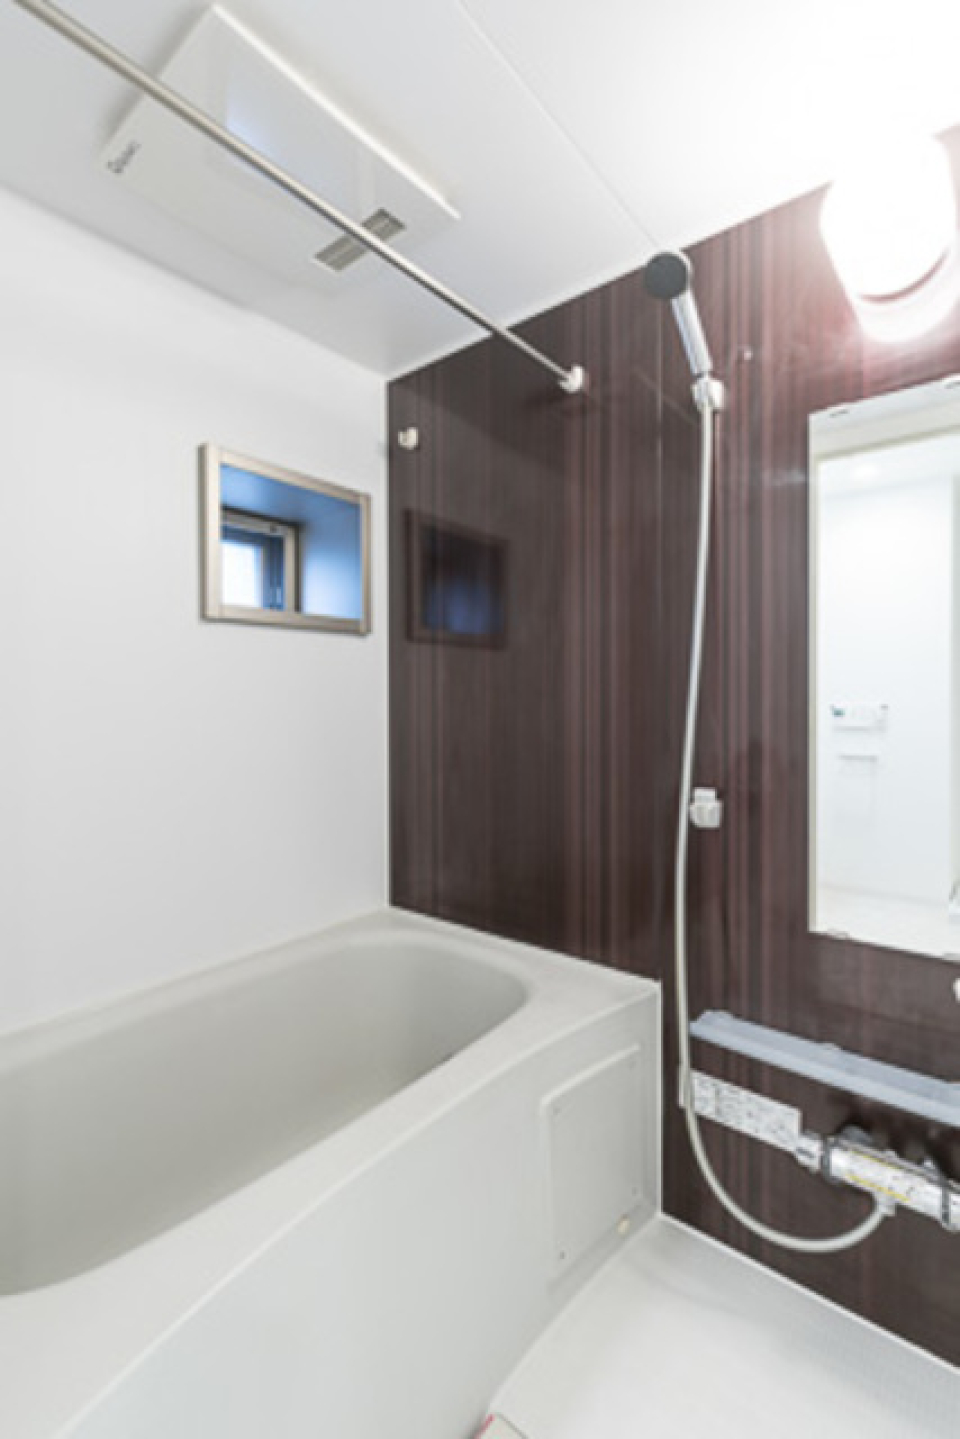 ダークのパネルが導入された浴室。※写真は同タイプ住戸です。